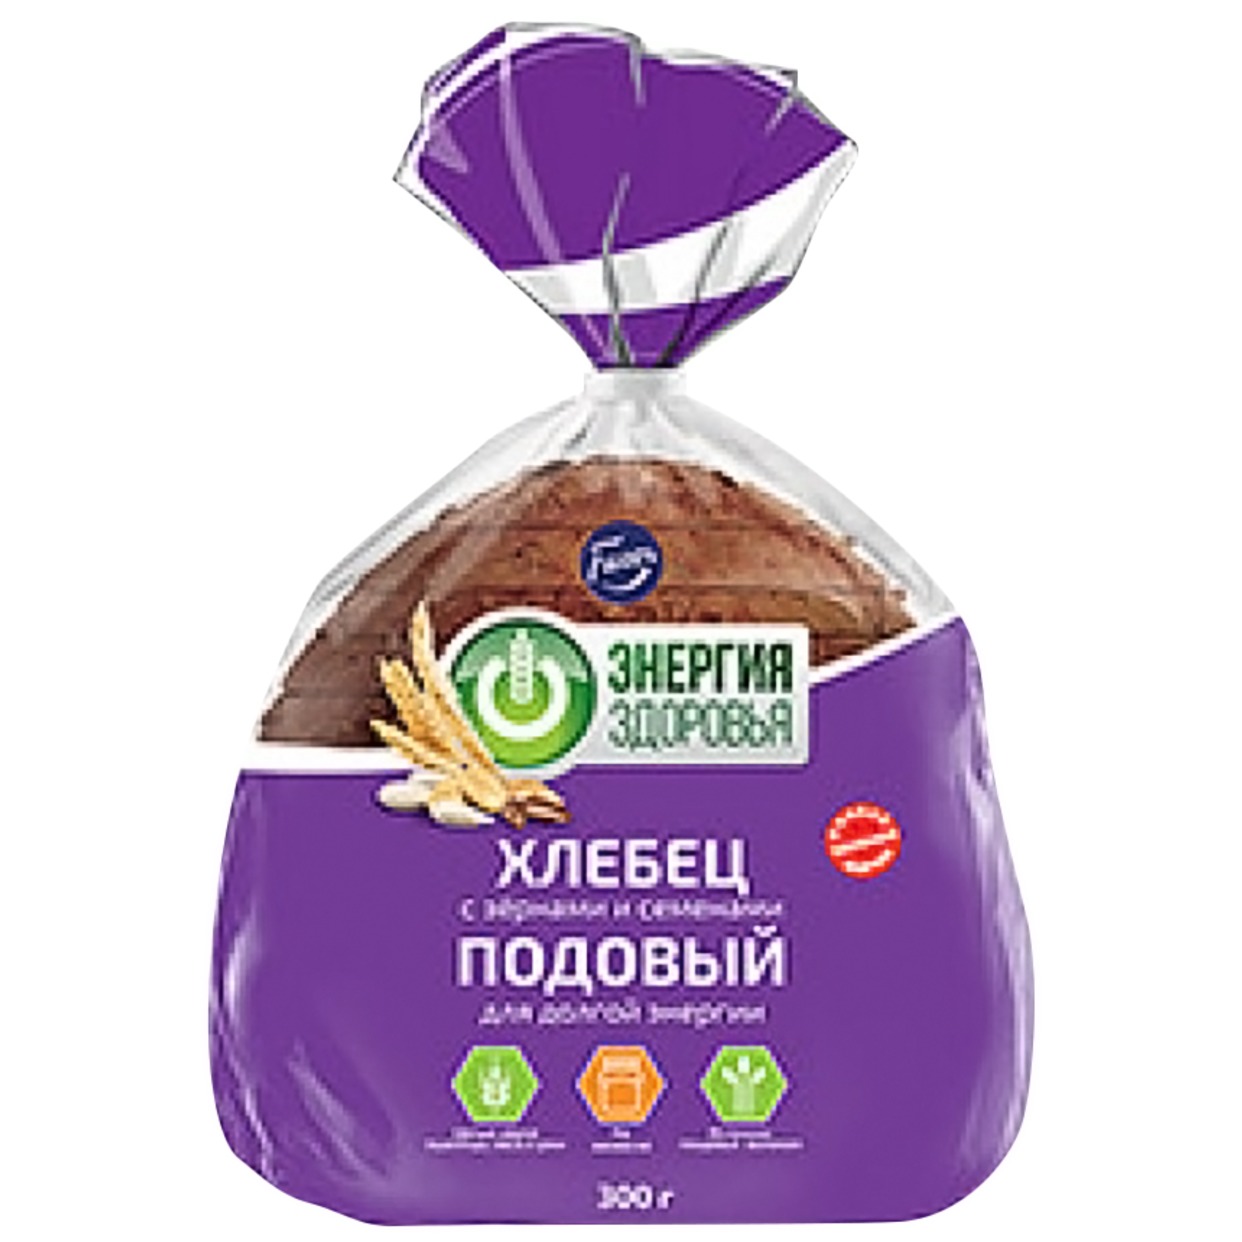 Хлебец с зернами и семенами, Fazer, 300 г по акции в Пятерочке